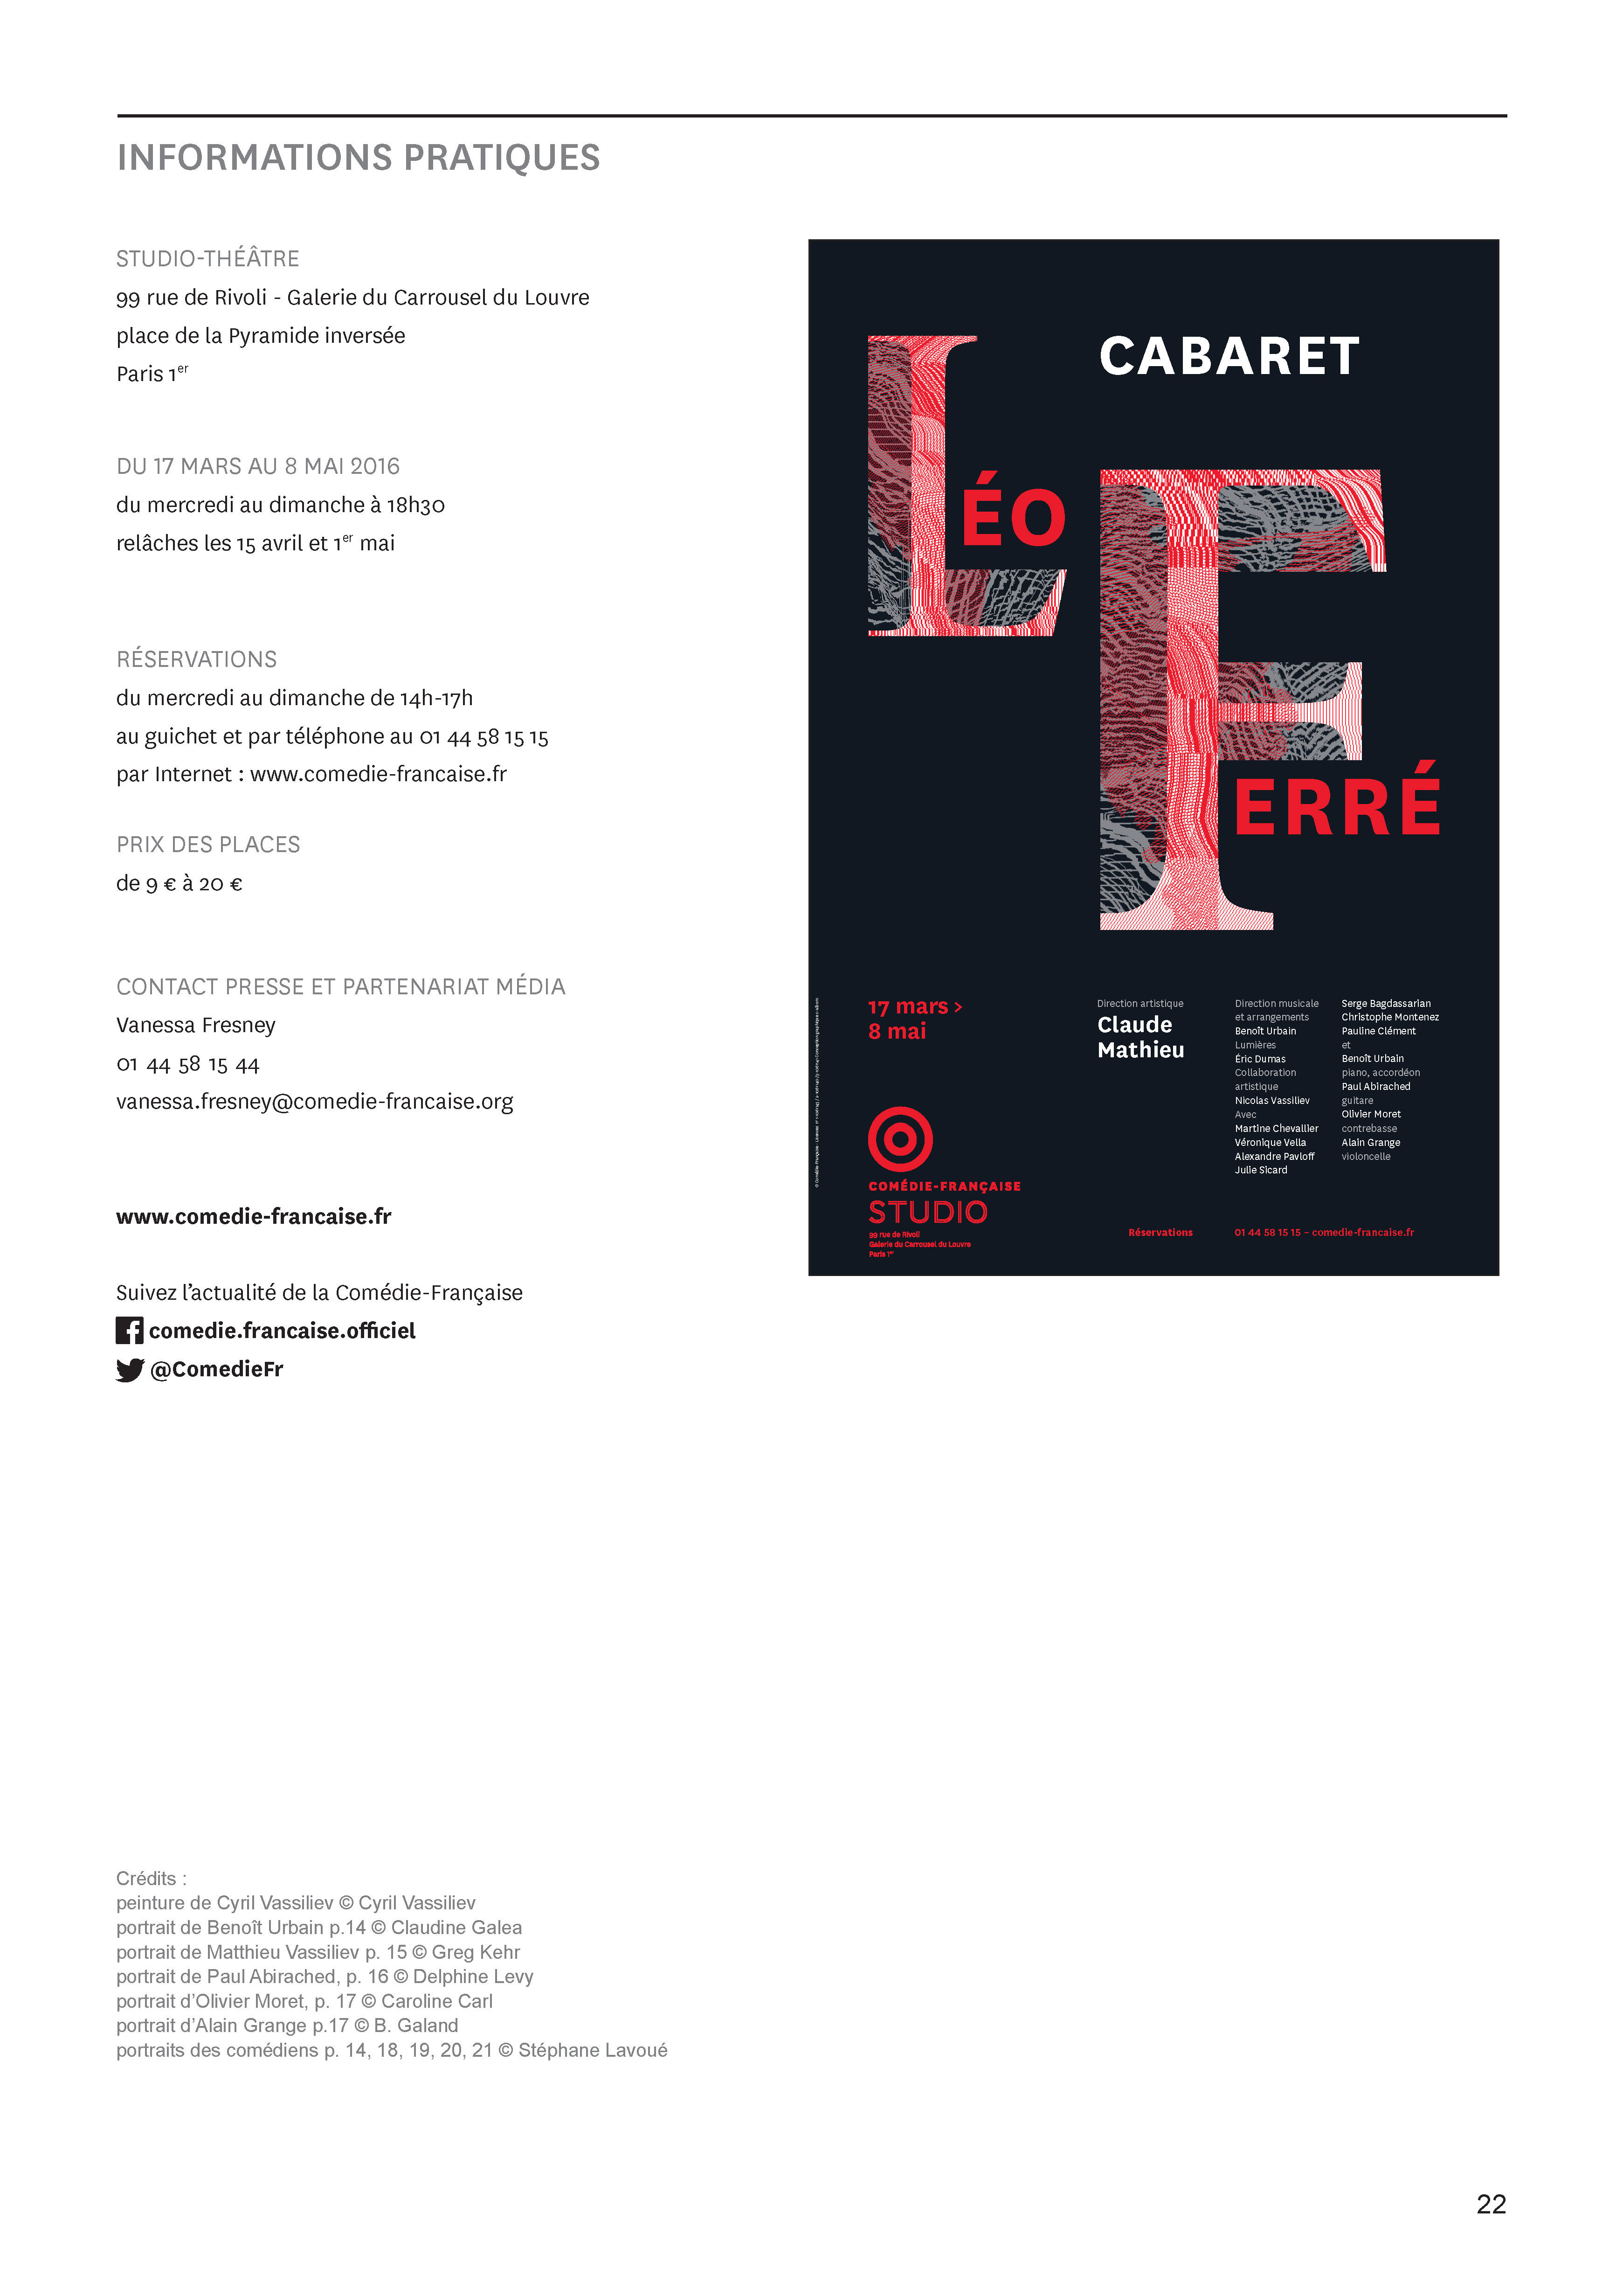 17/03/2016 programme Cabaret Léo Ferré de la Comedie Française